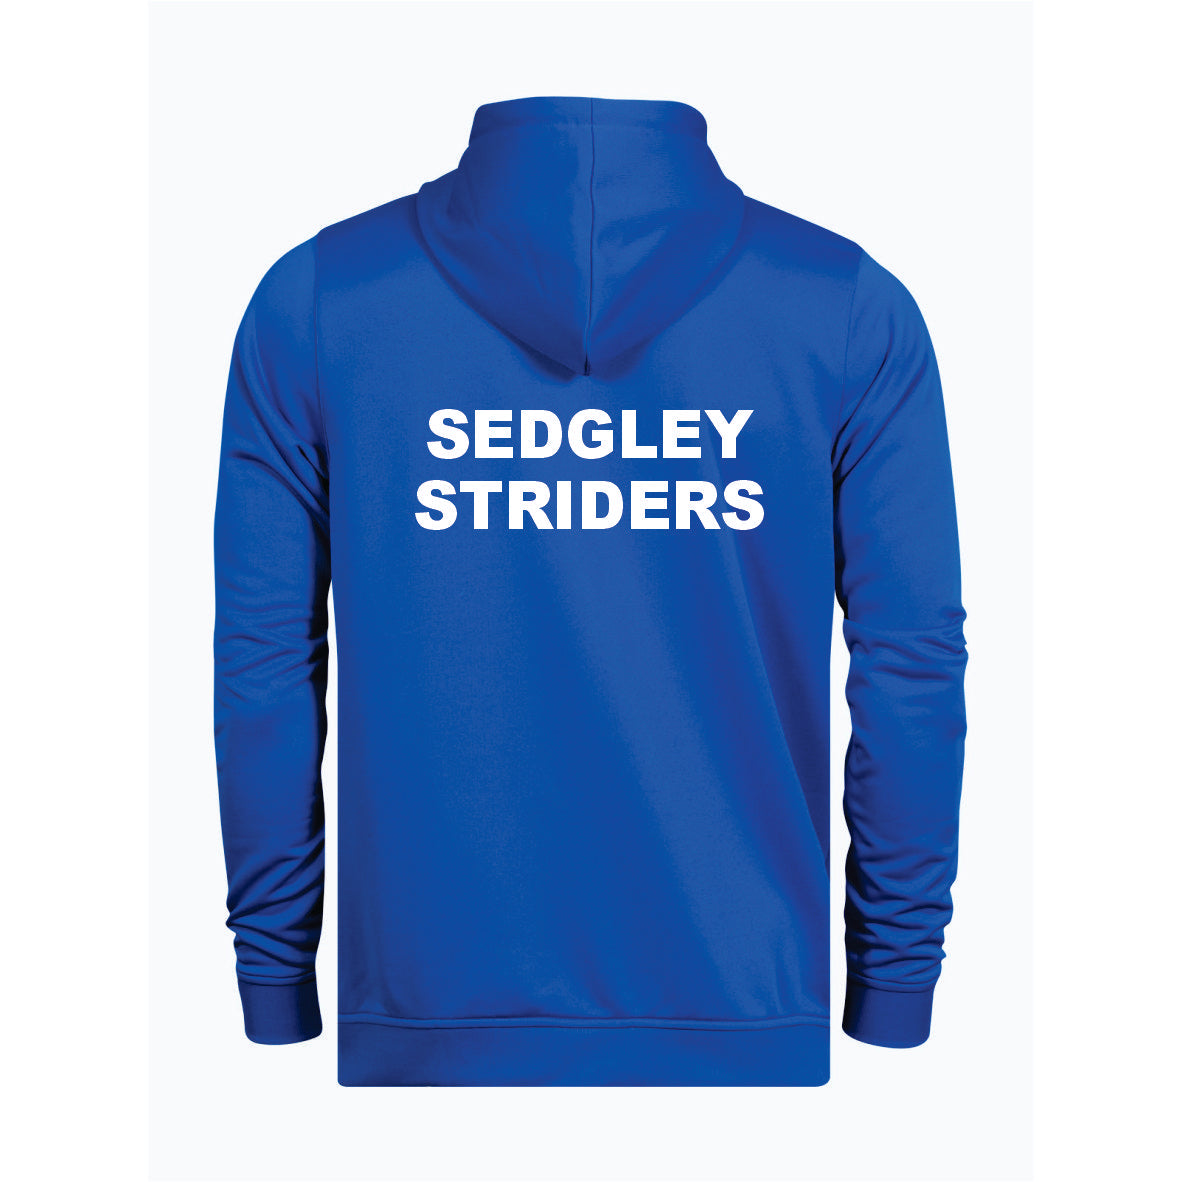 Sedgley Striders - Blue Hoodie [JH003]